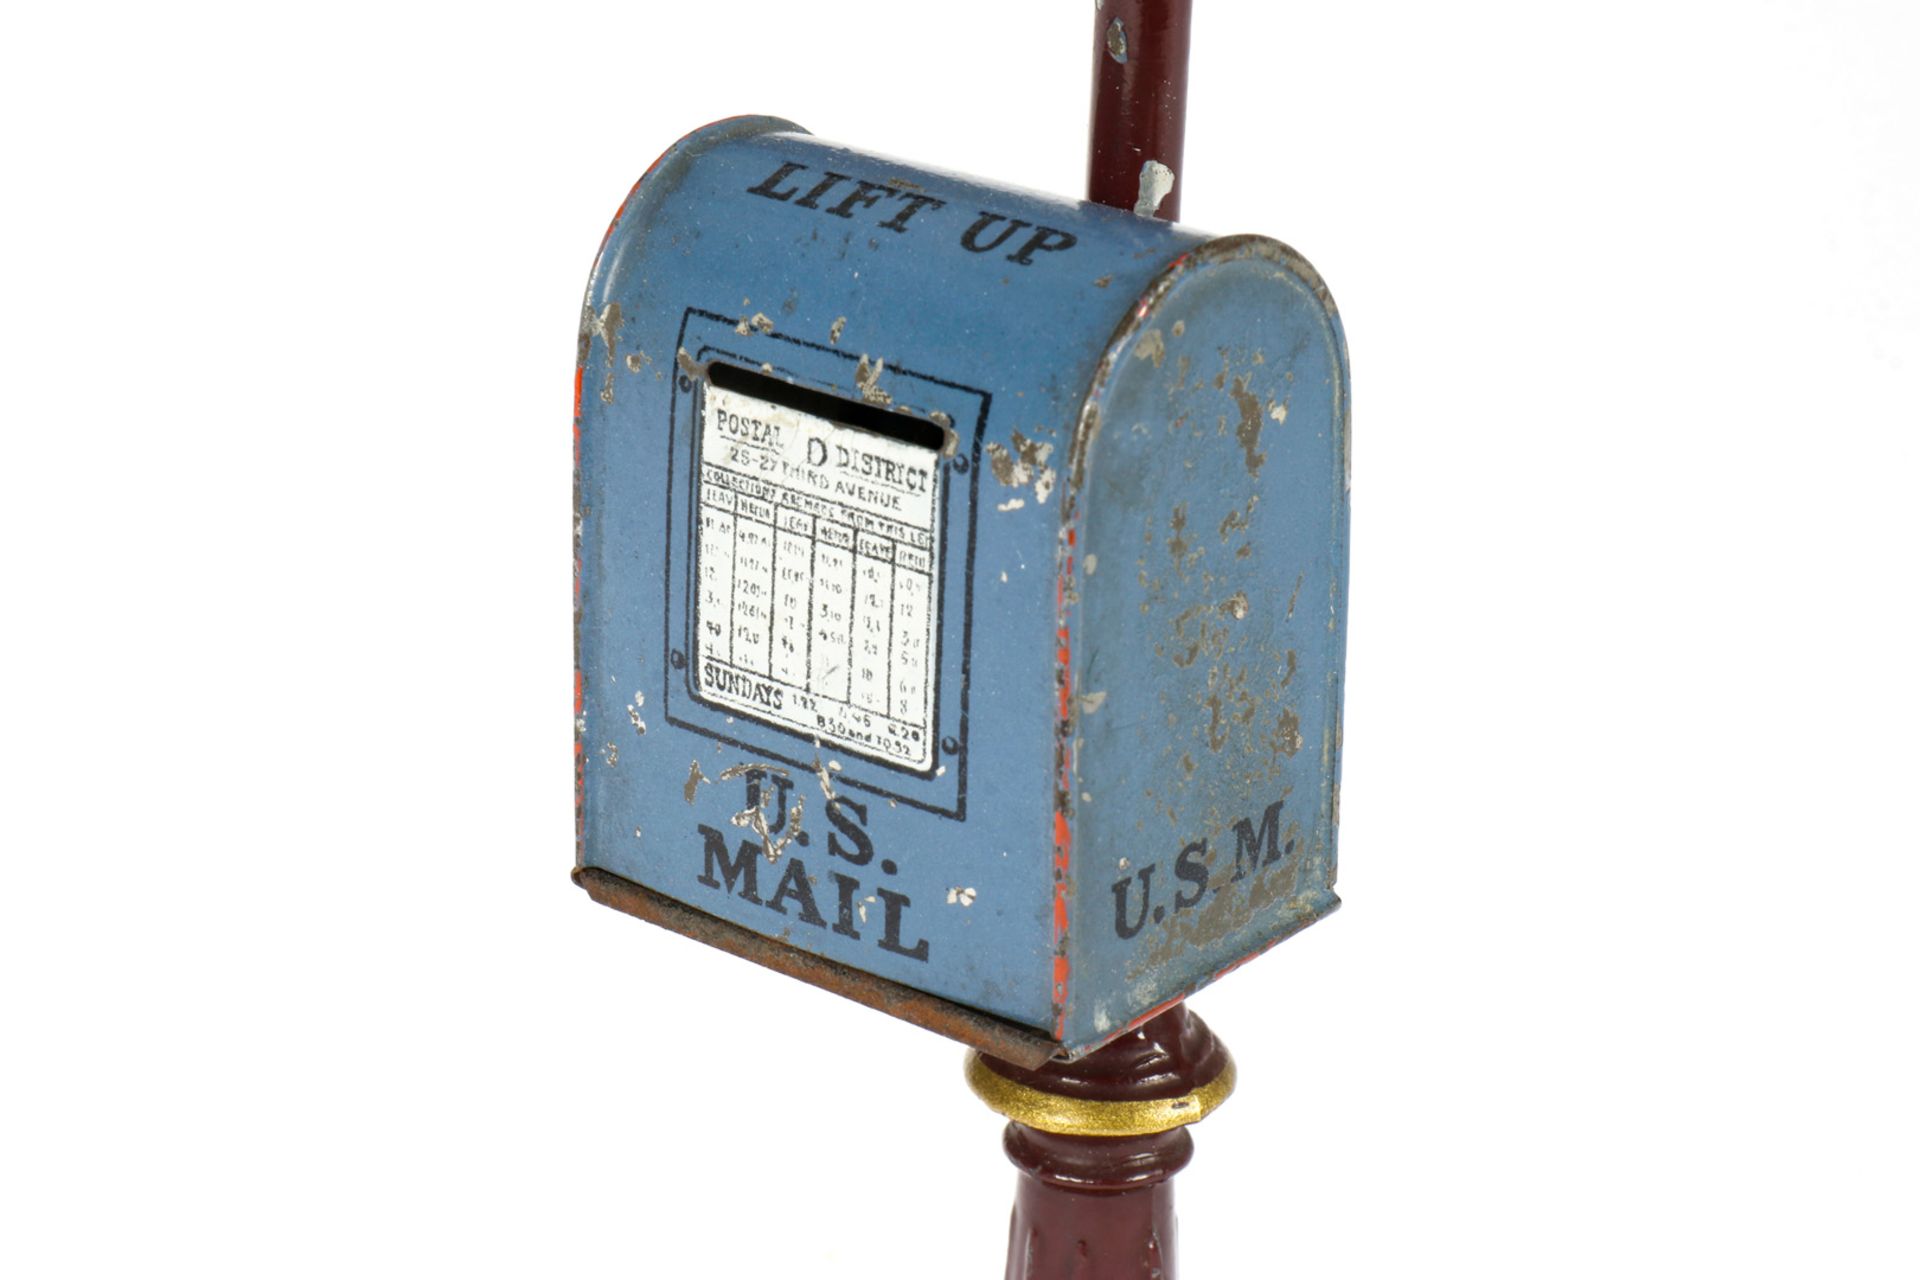 Bing amerikanische Straßenlaterne mit Briefkasten, HL, uralt, leichte Gebrauchsspuren, H 24, Z 2 - Bild 3 aus 6